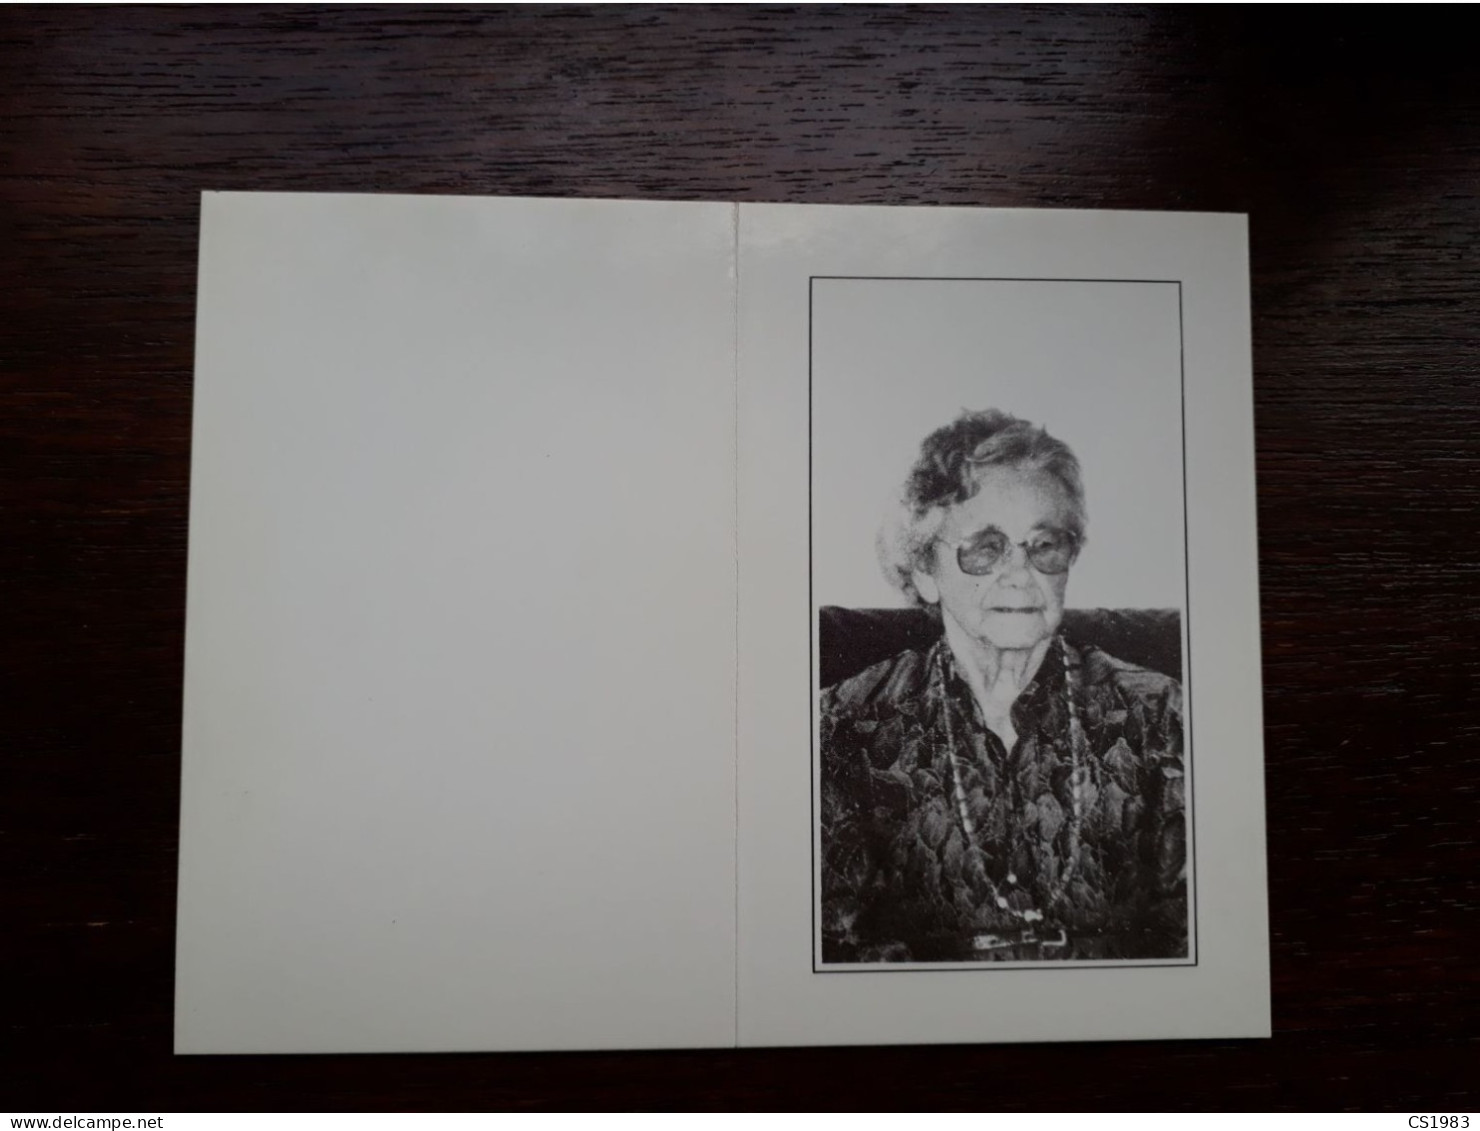 Maria Van Reusel ° Geel 1908 + 1993 X Louis Vermeiren - Begraf. Beerse - Décès